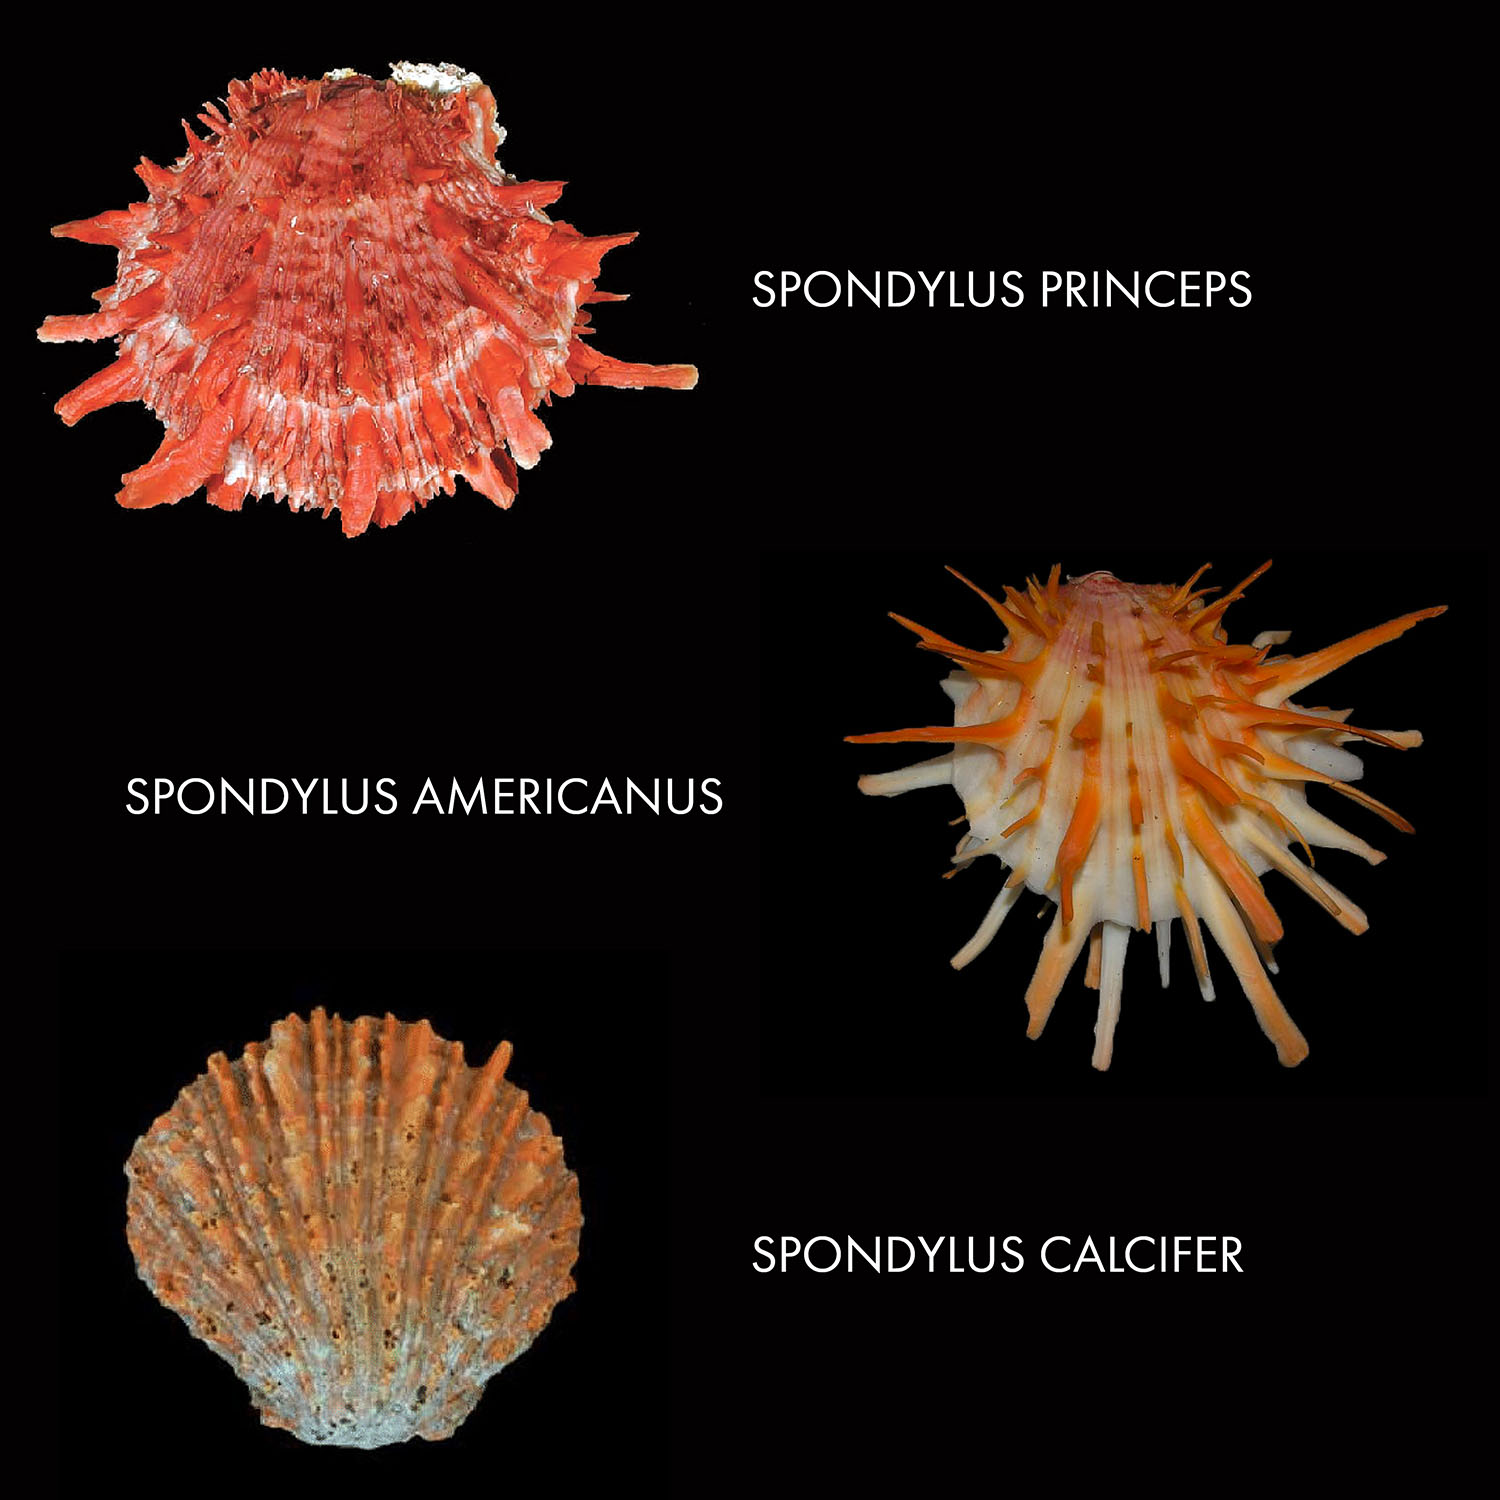 Три основных вида раковин спондилюса, использовавшихся индейцами.